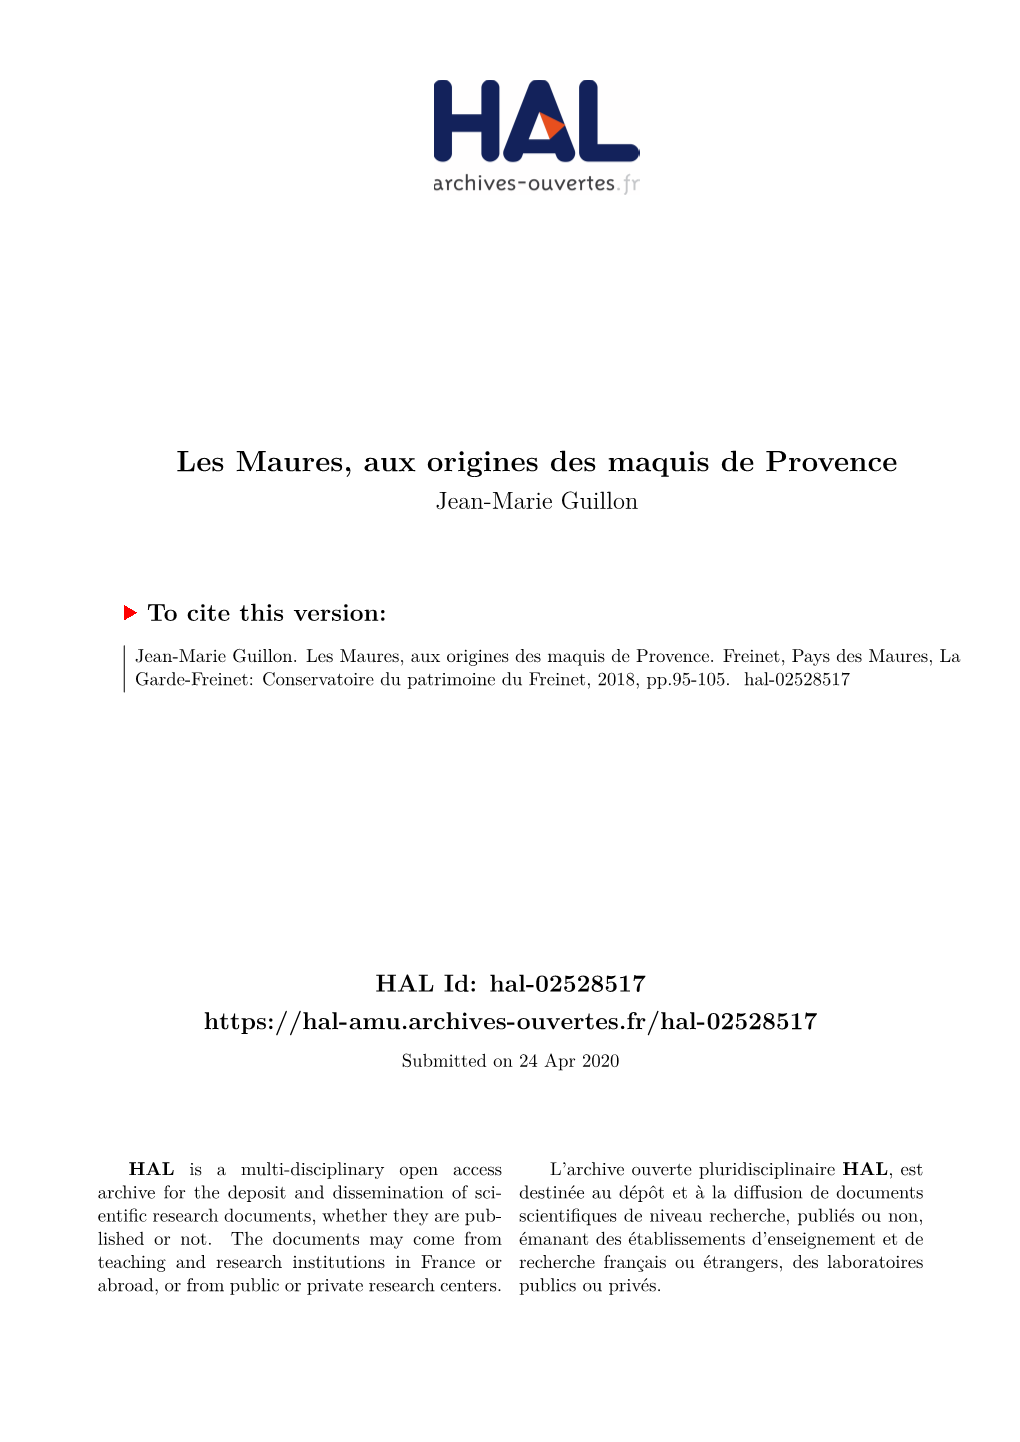 Les Maures, Aux Origines Des Maquis De Provence Jean-Marie Guillon